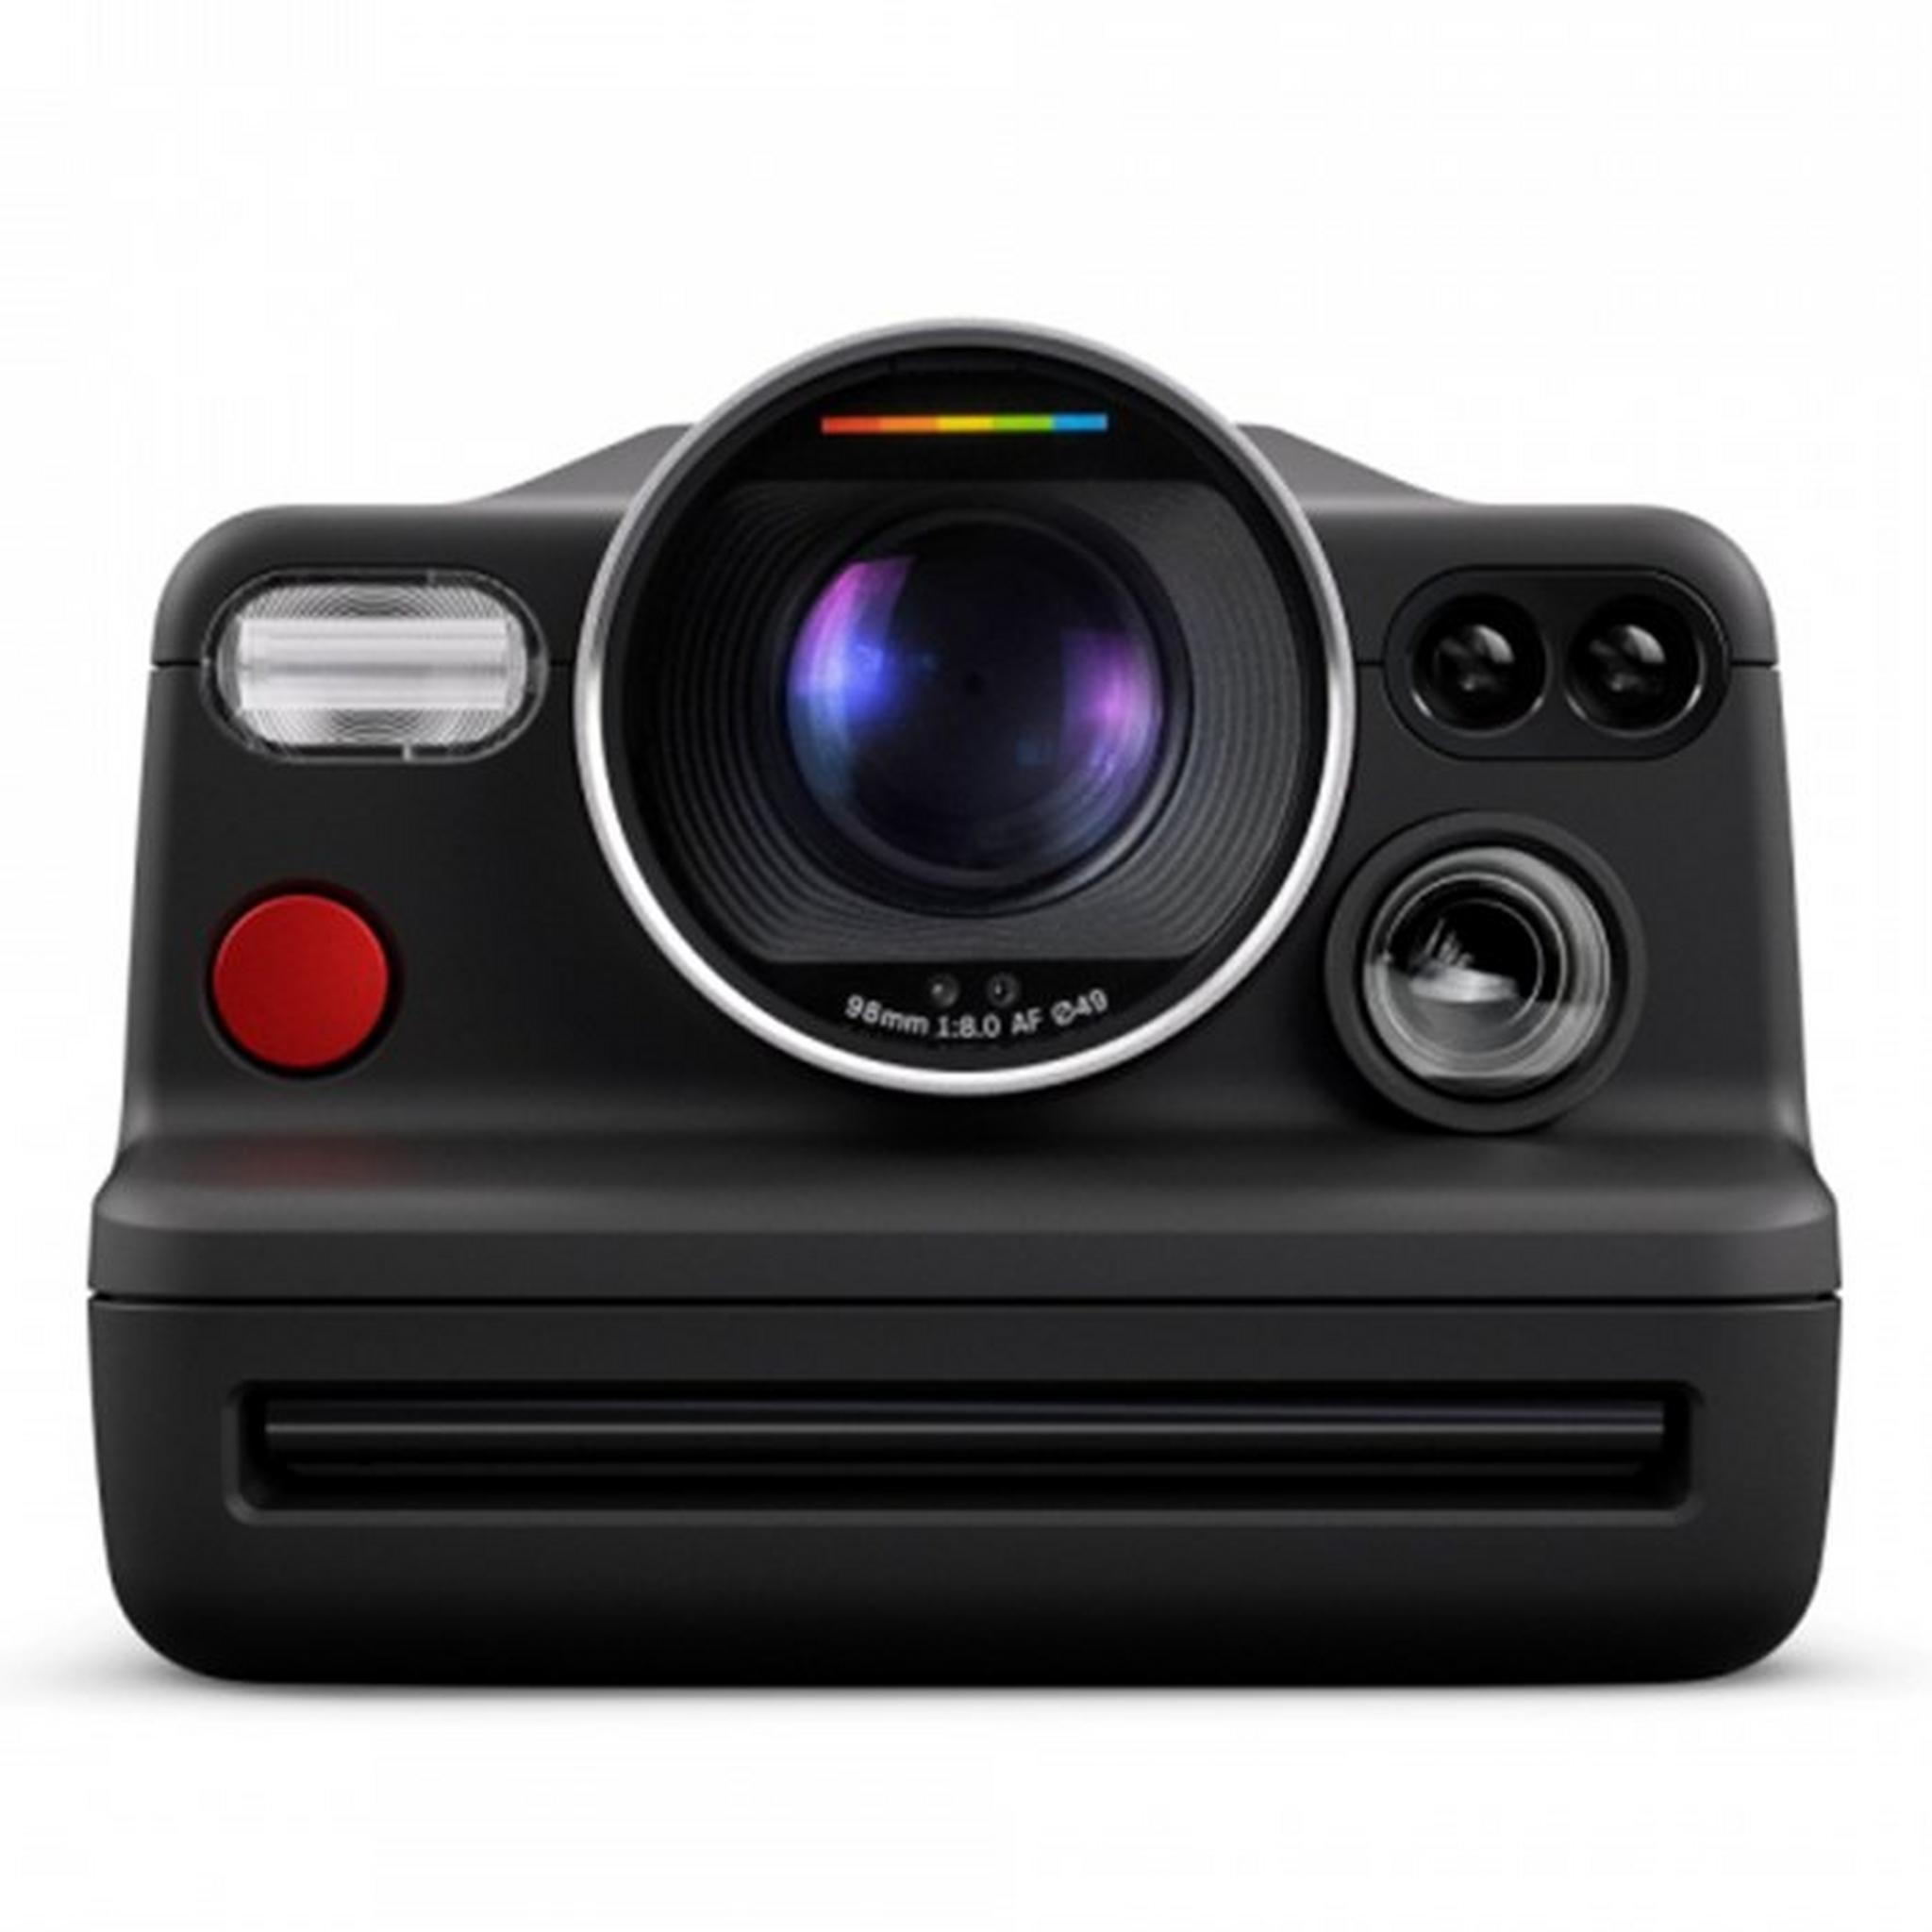 كاميرا الصور الفورية أي-2 من بولارويد, 98 مم, 009078 – أسود